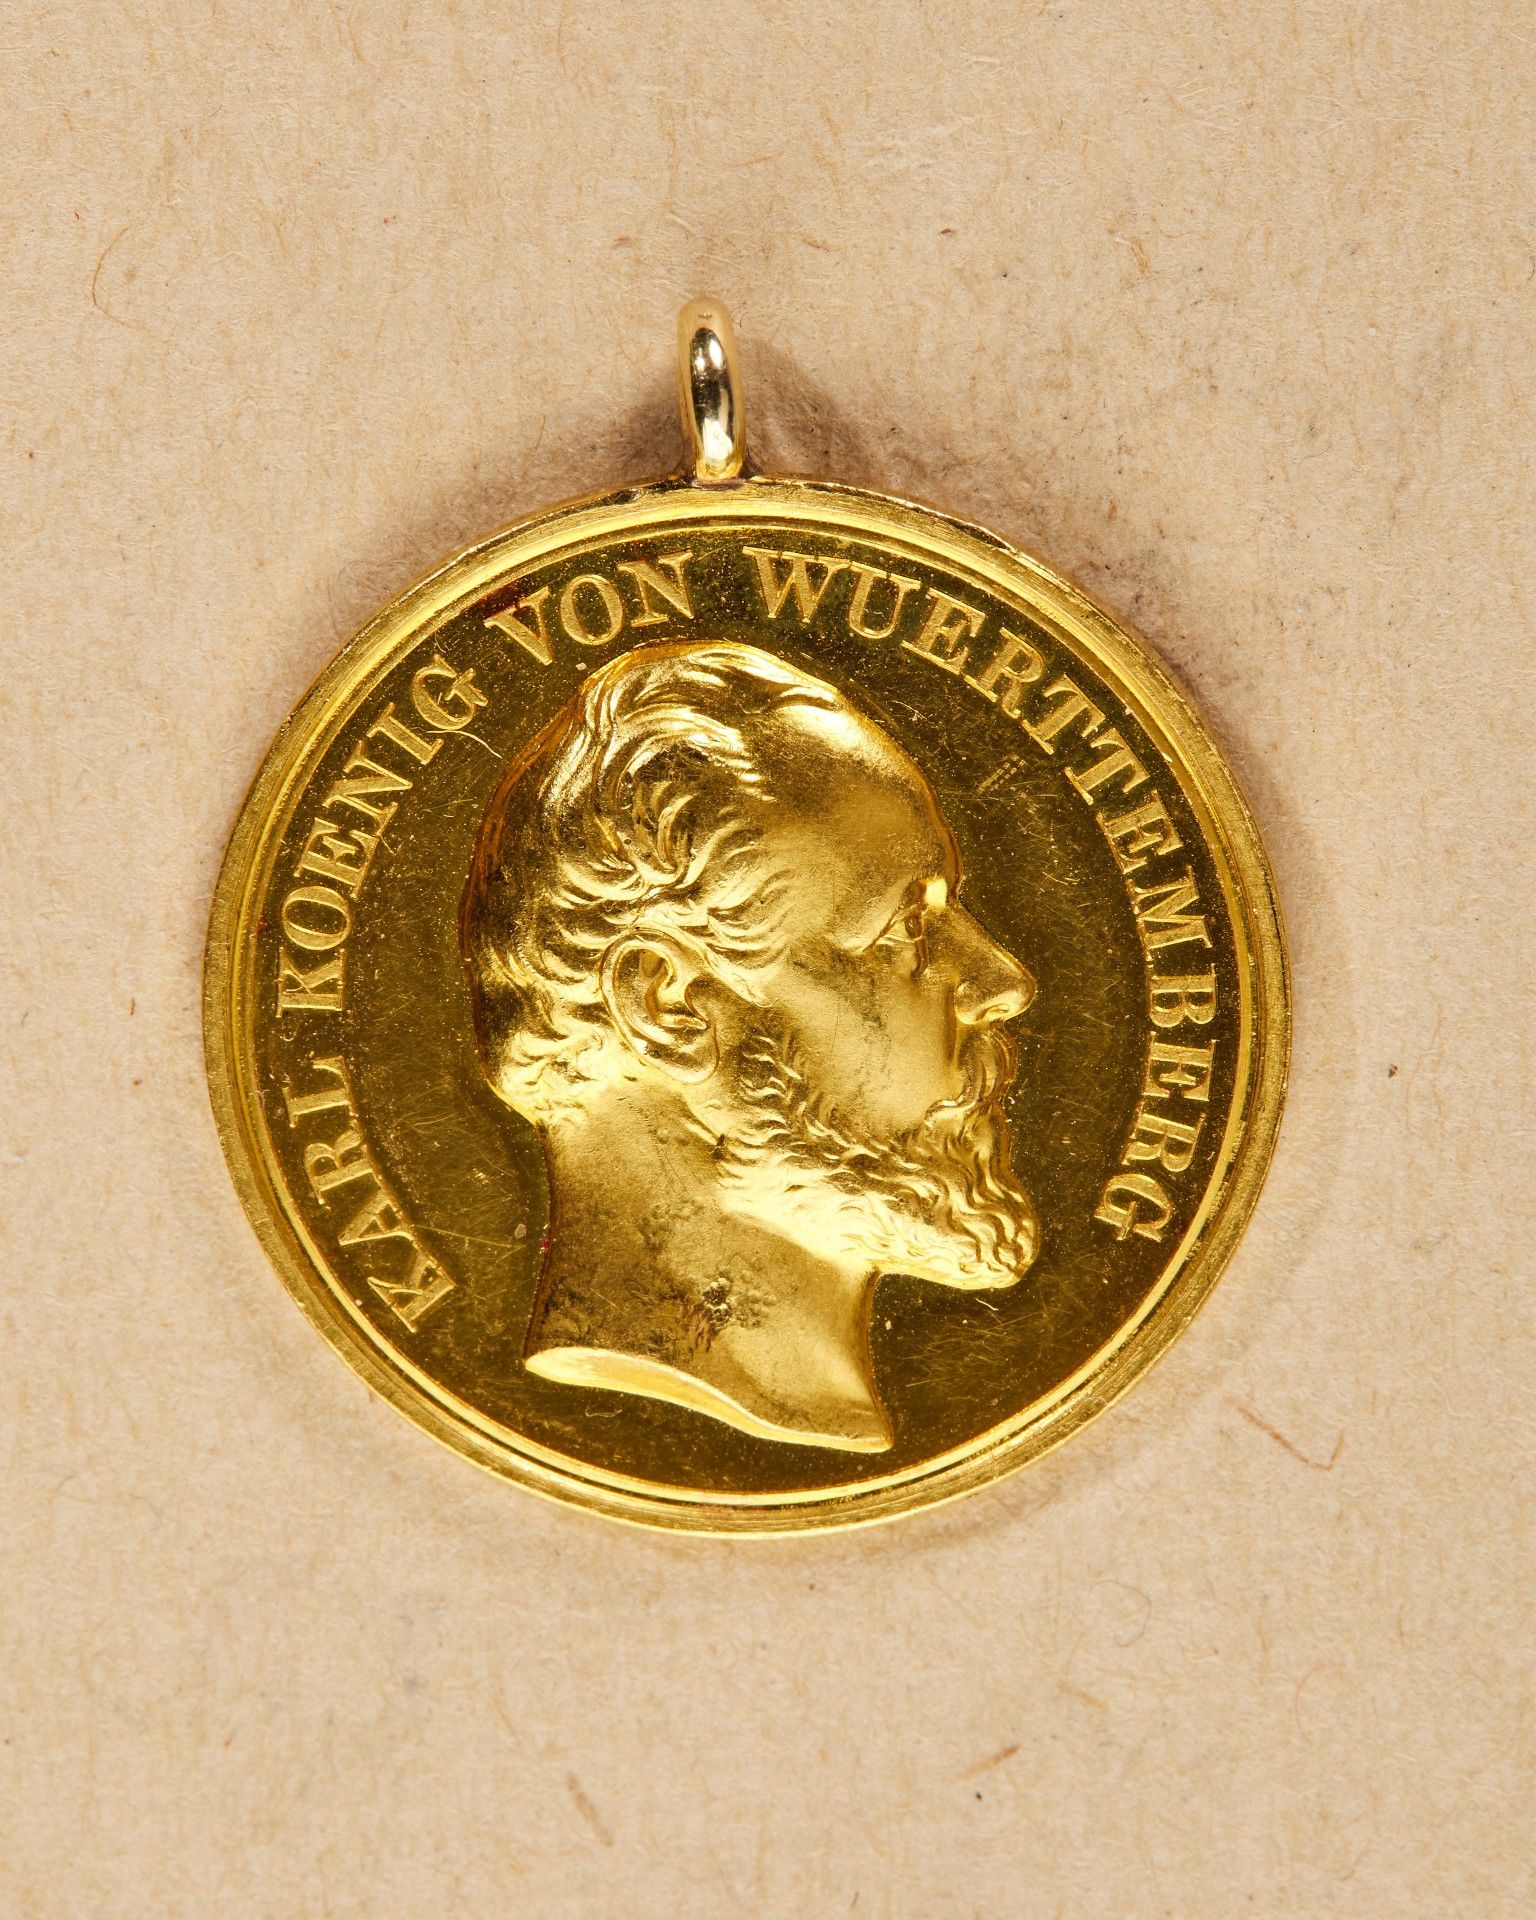 Württemberg: Goldene Zivilverdienstmedaille mit dem Bild des König Karl (1864-91)